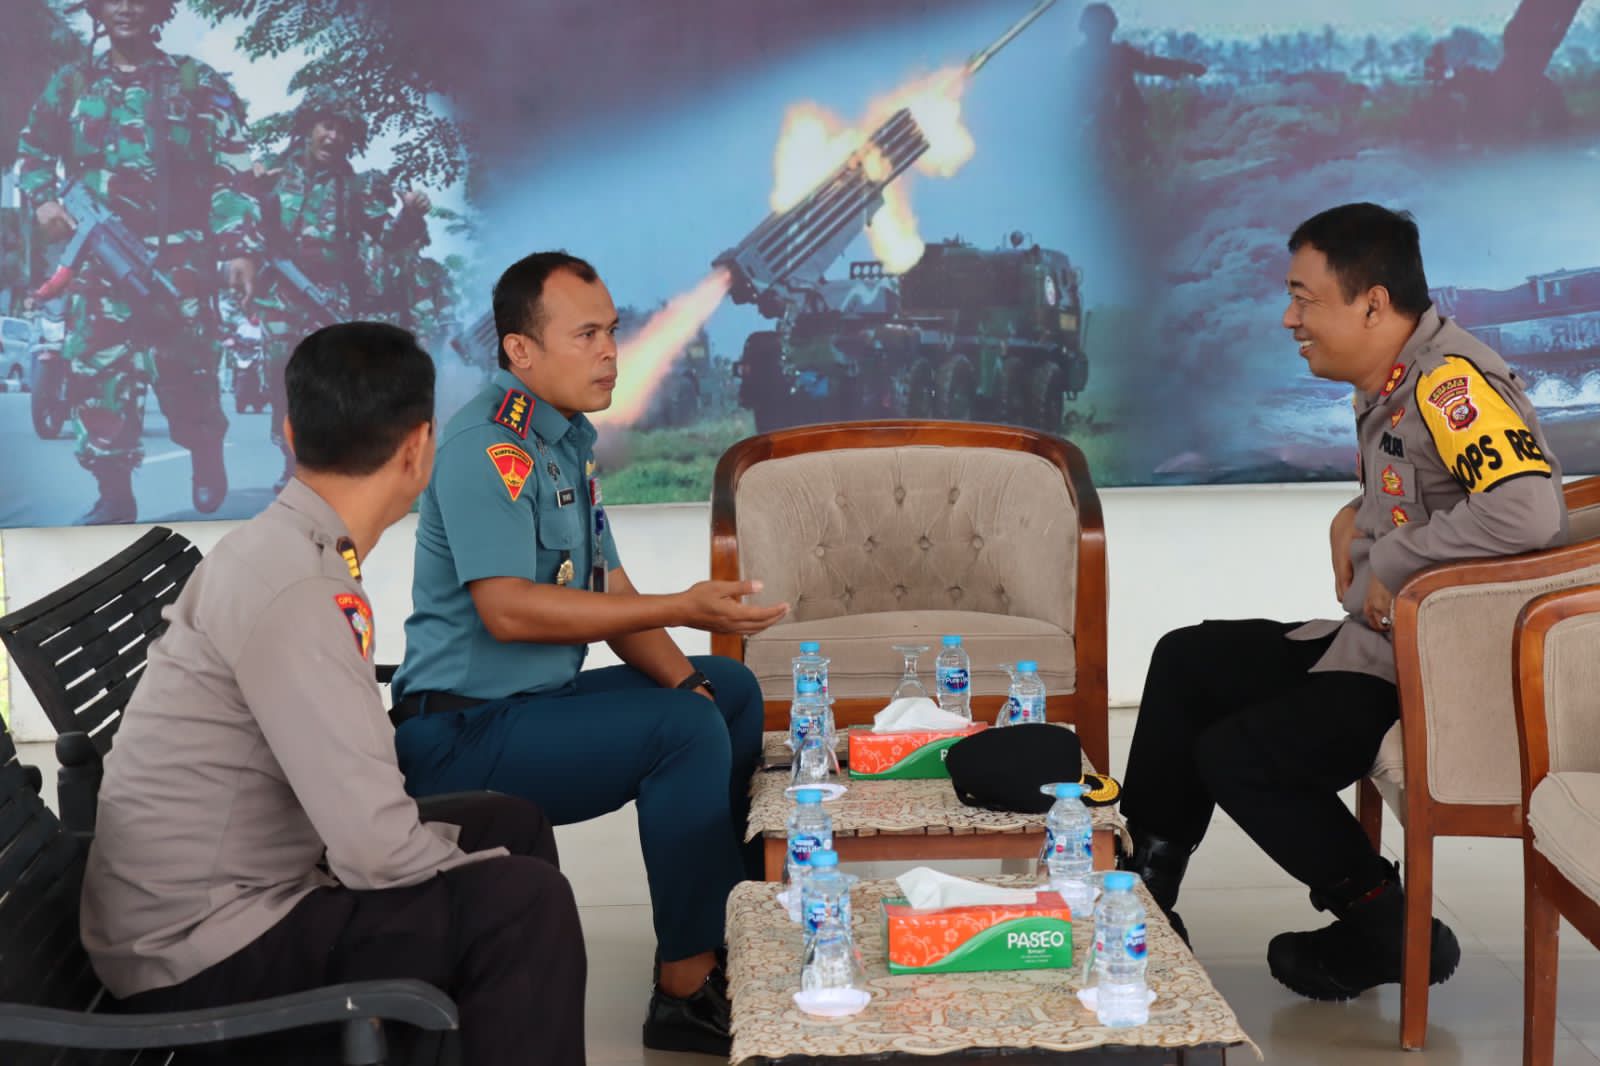 Kapolres Mempawah, AKBP Sudarsono berbincang bersama Danyonmarhanlan XII, Letkol Marinir Tri Anto. (Foto: Polres Mempawah)